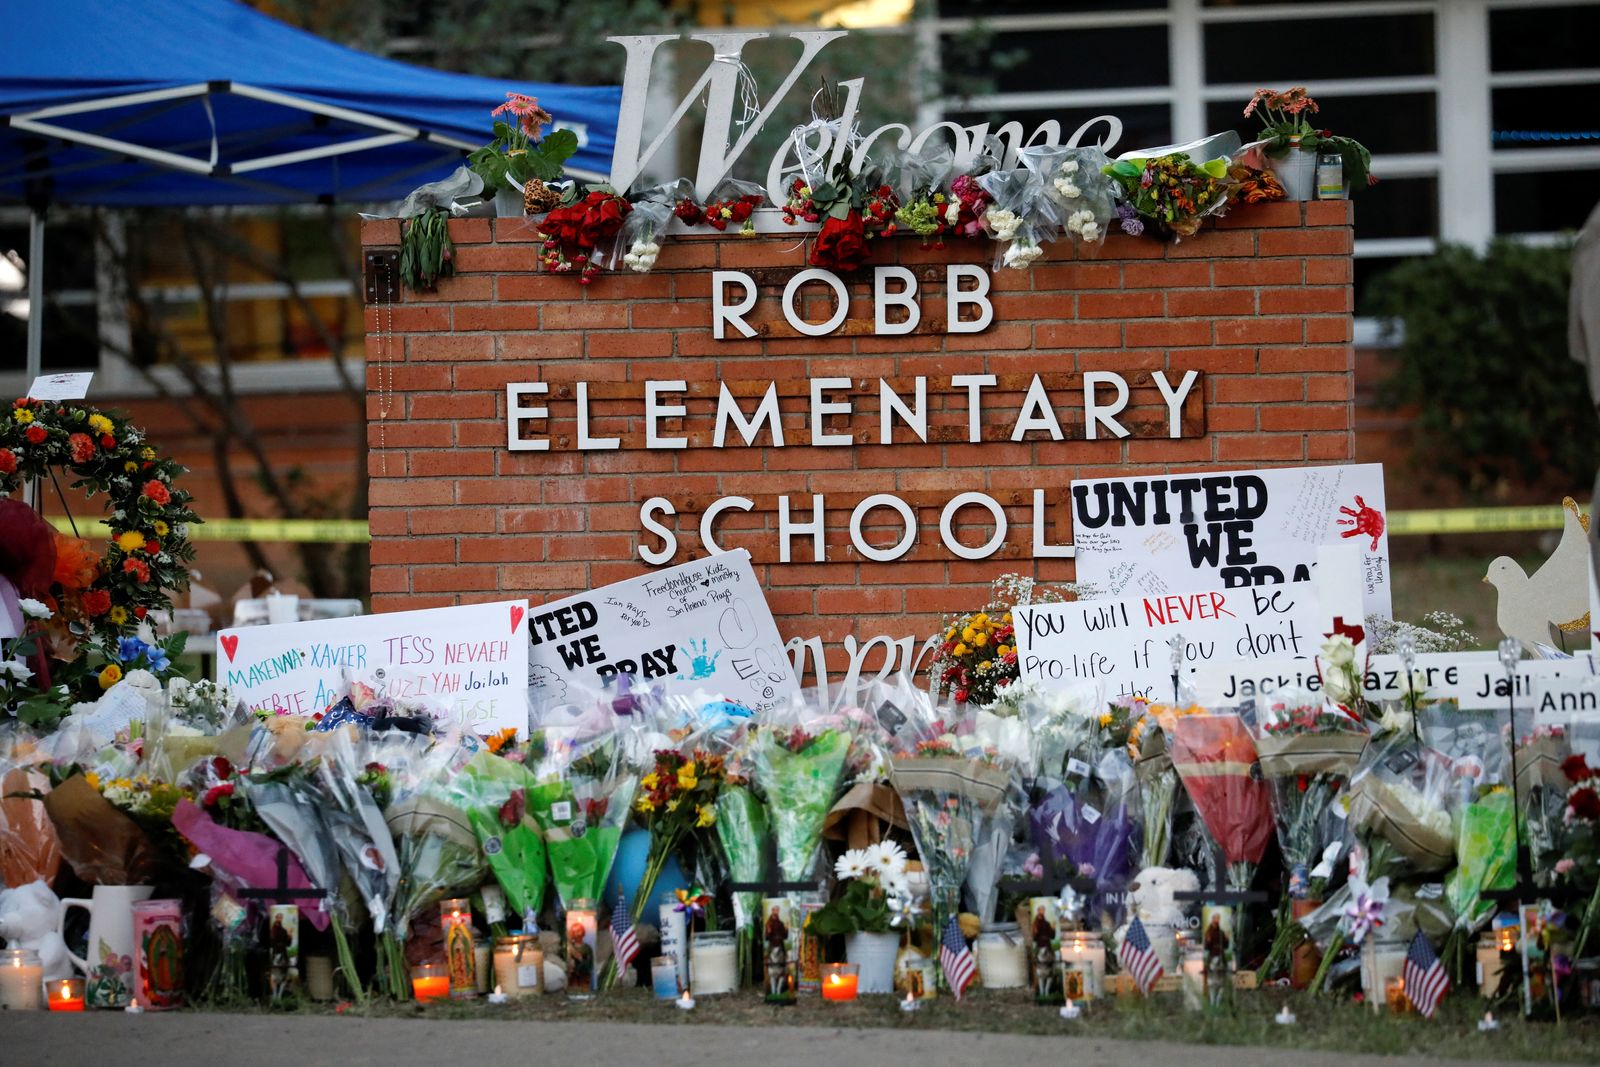 زهور وشموع أمام نصب تذكاري لضحايا إطلاق النار في مدرسة روب الابتدائية في أوفالدي، تكساس. الولايات المتحدة في 27 مايو 2022.  - REUTERS